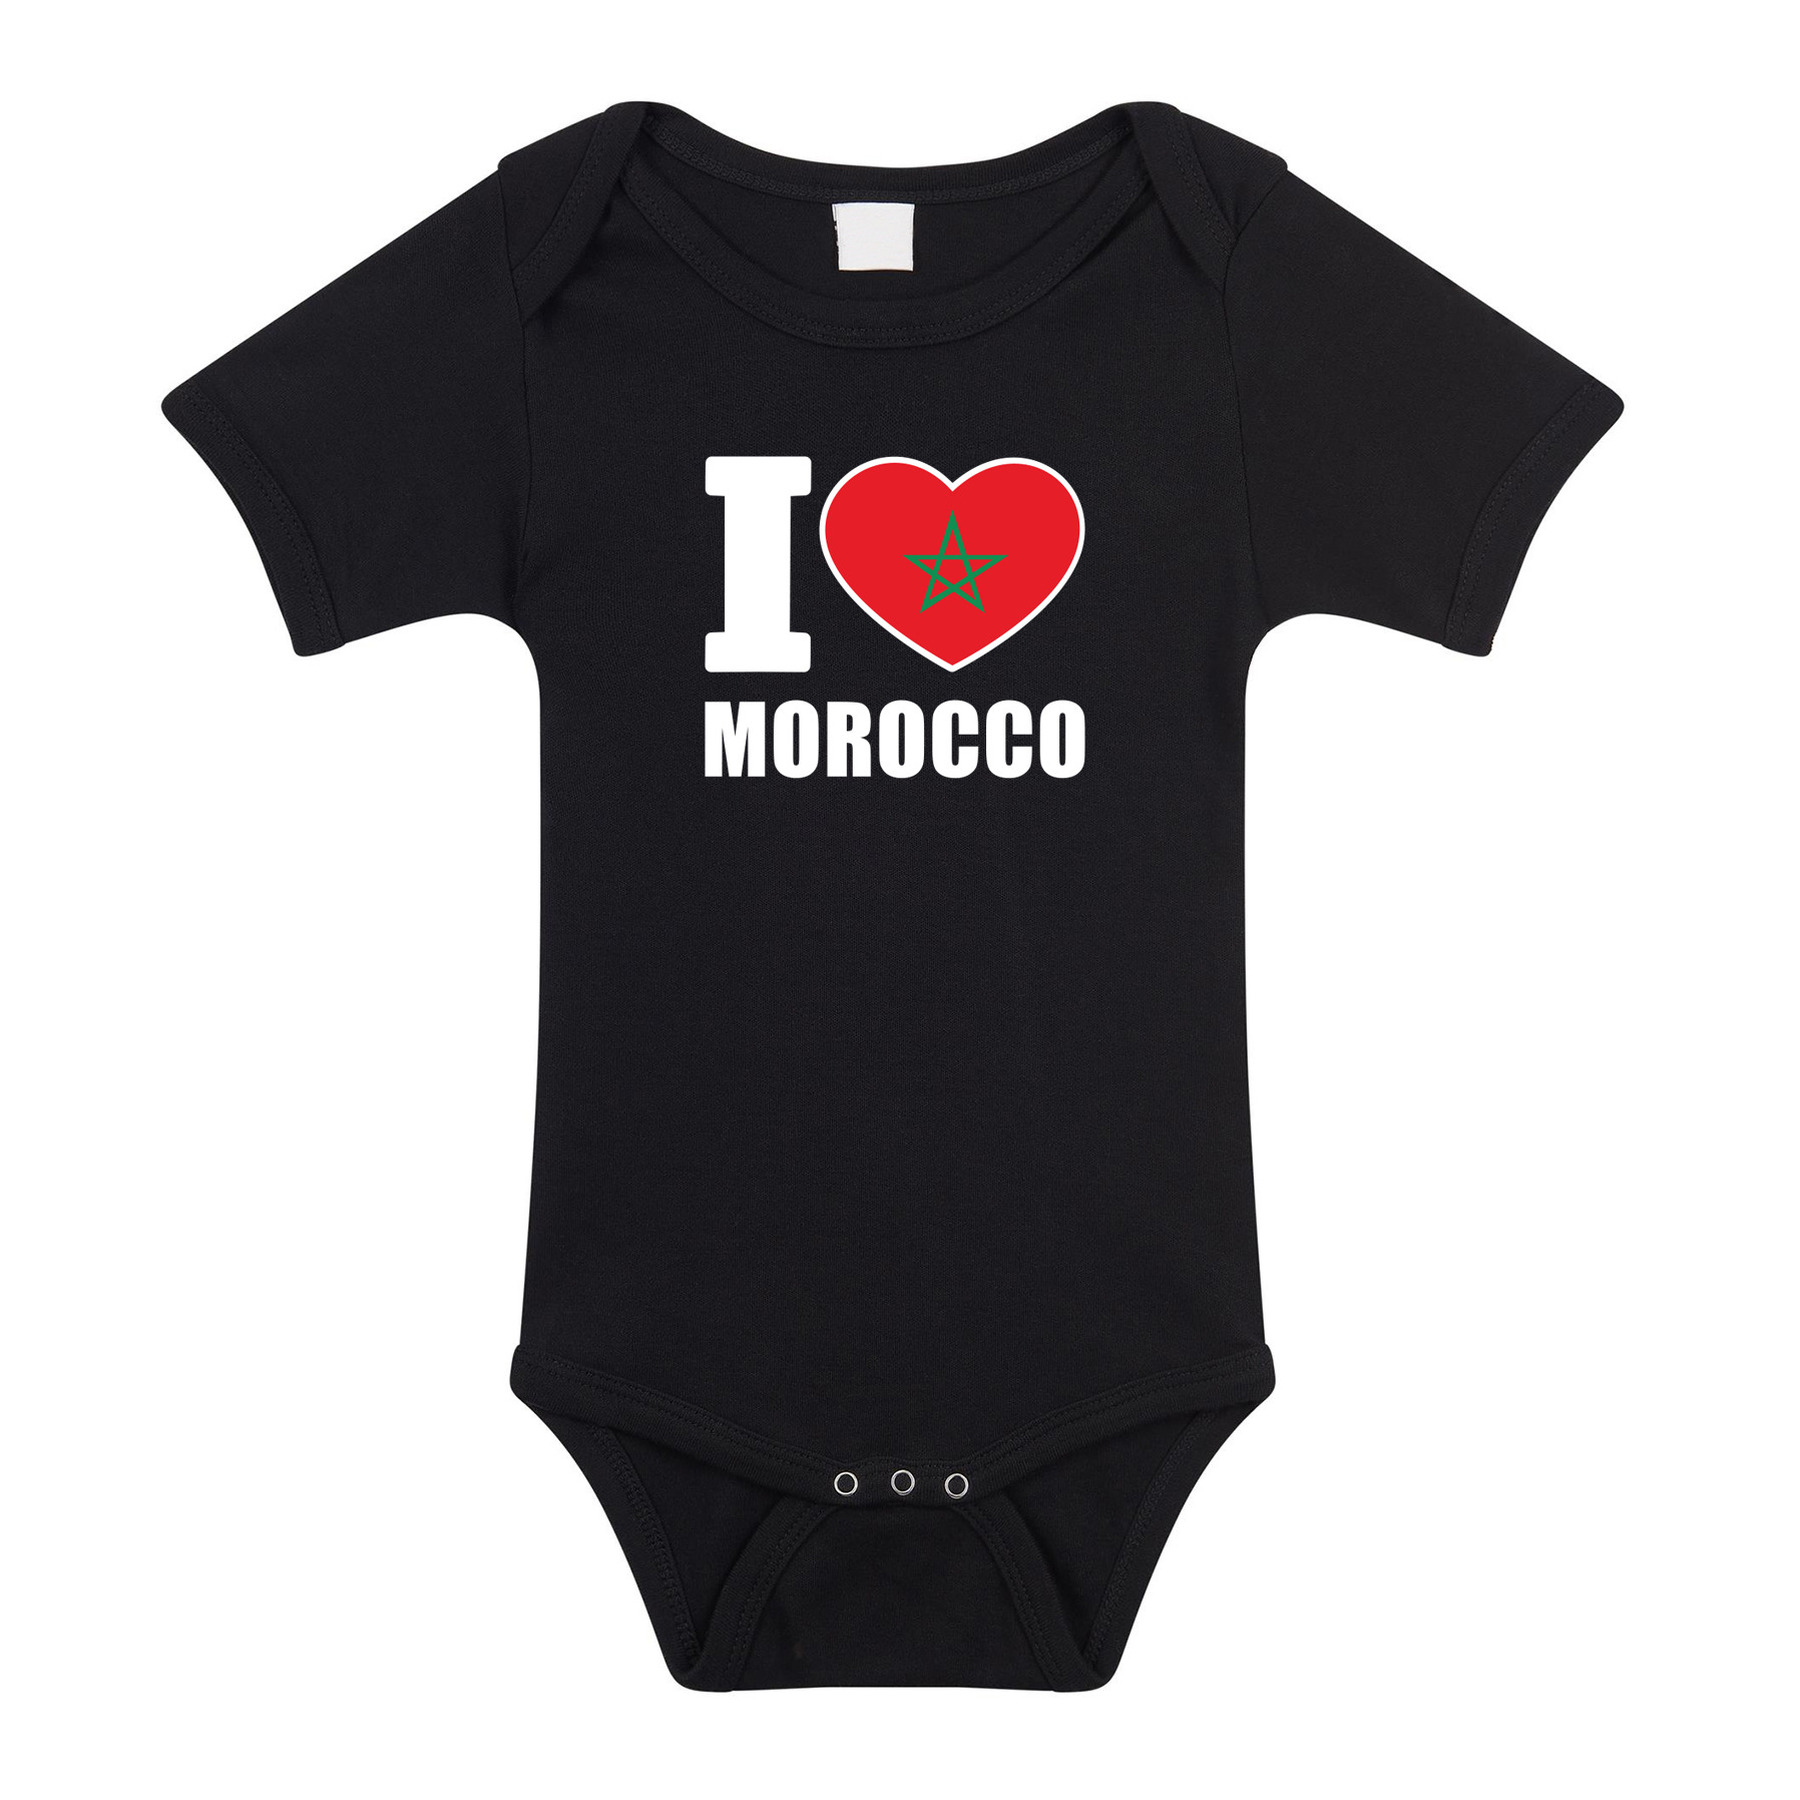 I love Morocco baby rompertje zwart Marokko jongen-meisje